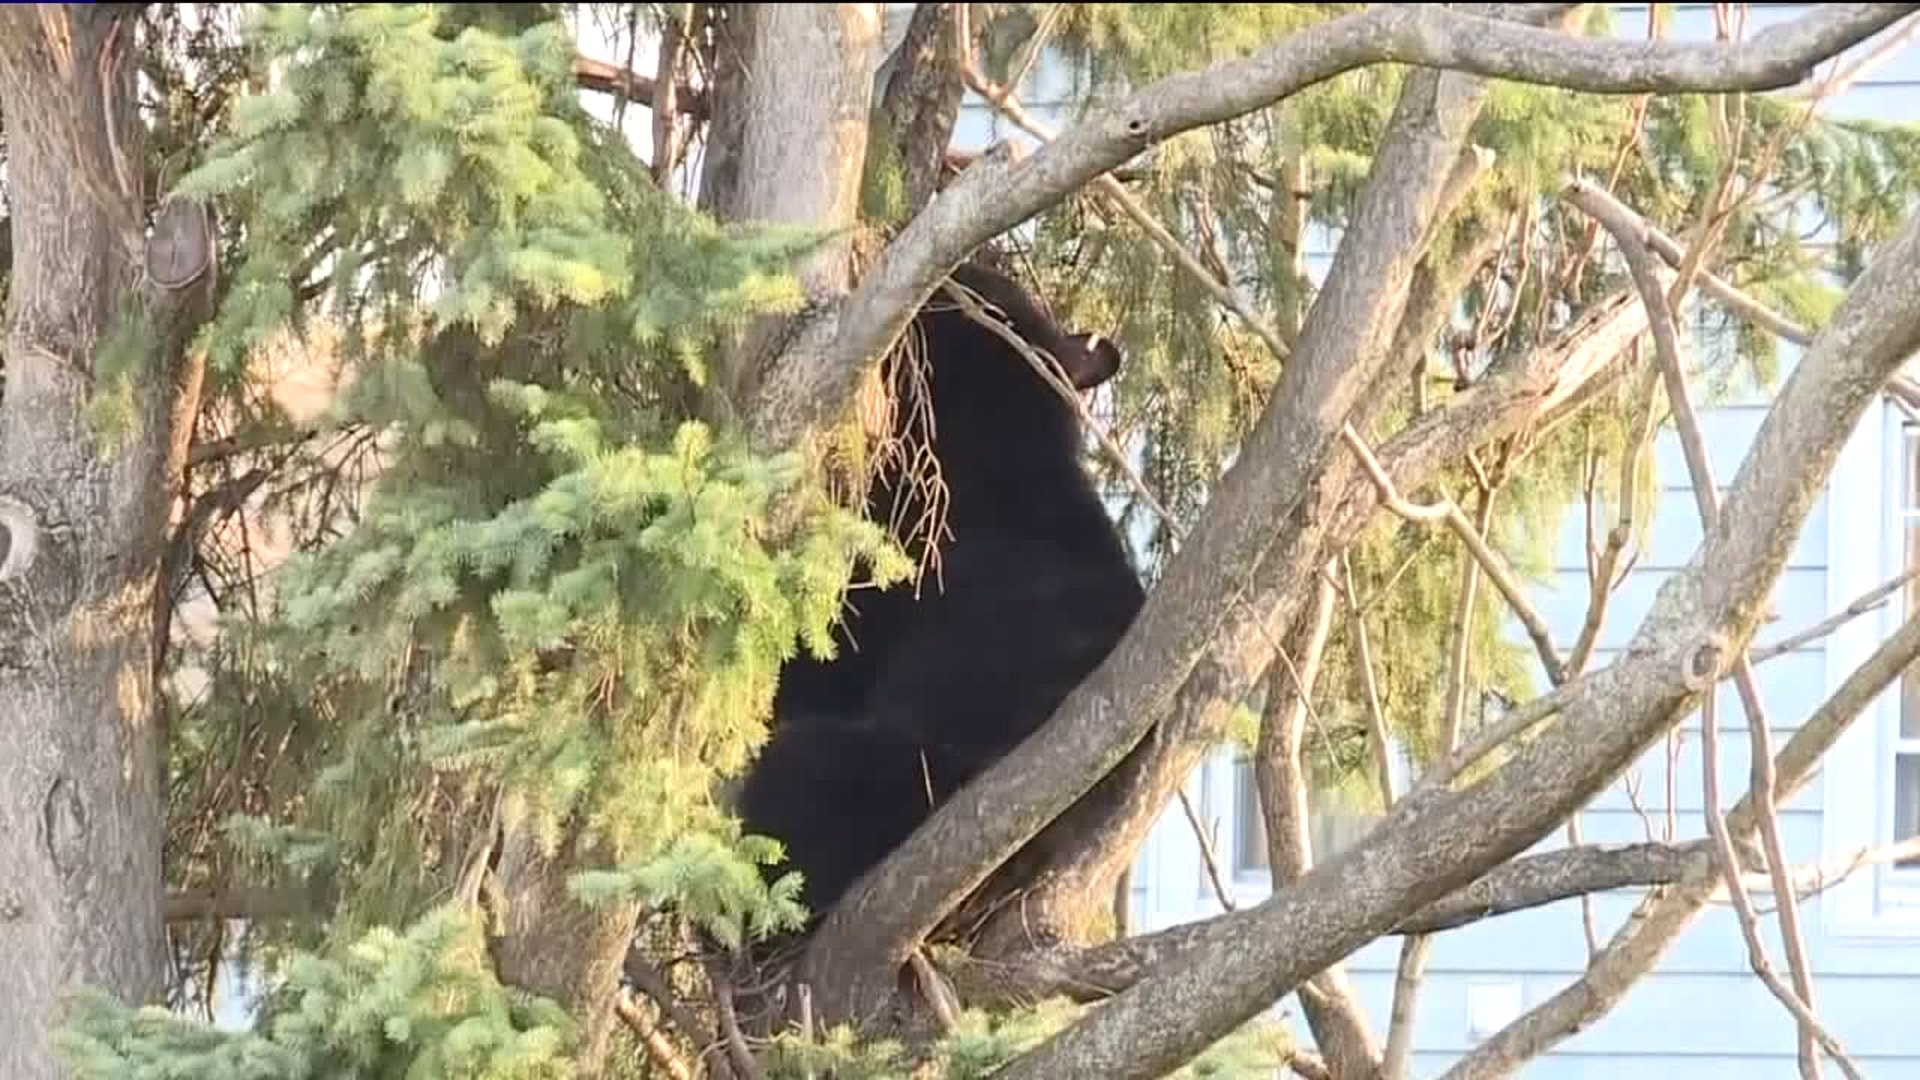 Bear Found in Tree in Wilkes-Barre